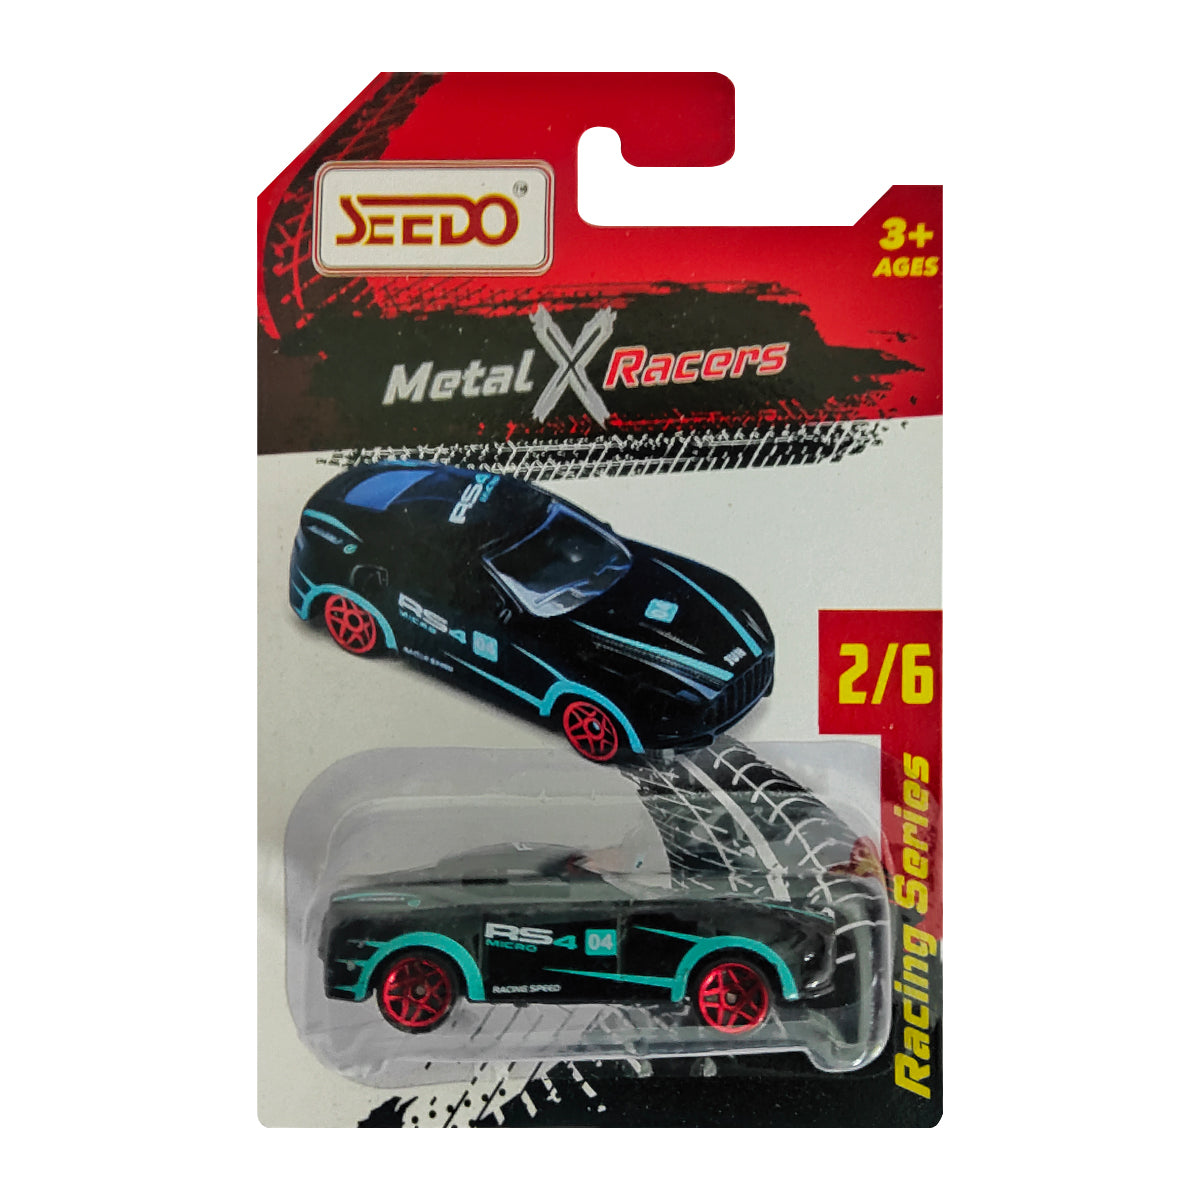 Seedo Metal X Racers Racing Series Die Cast Car for Ages 3+, Pack Of 6